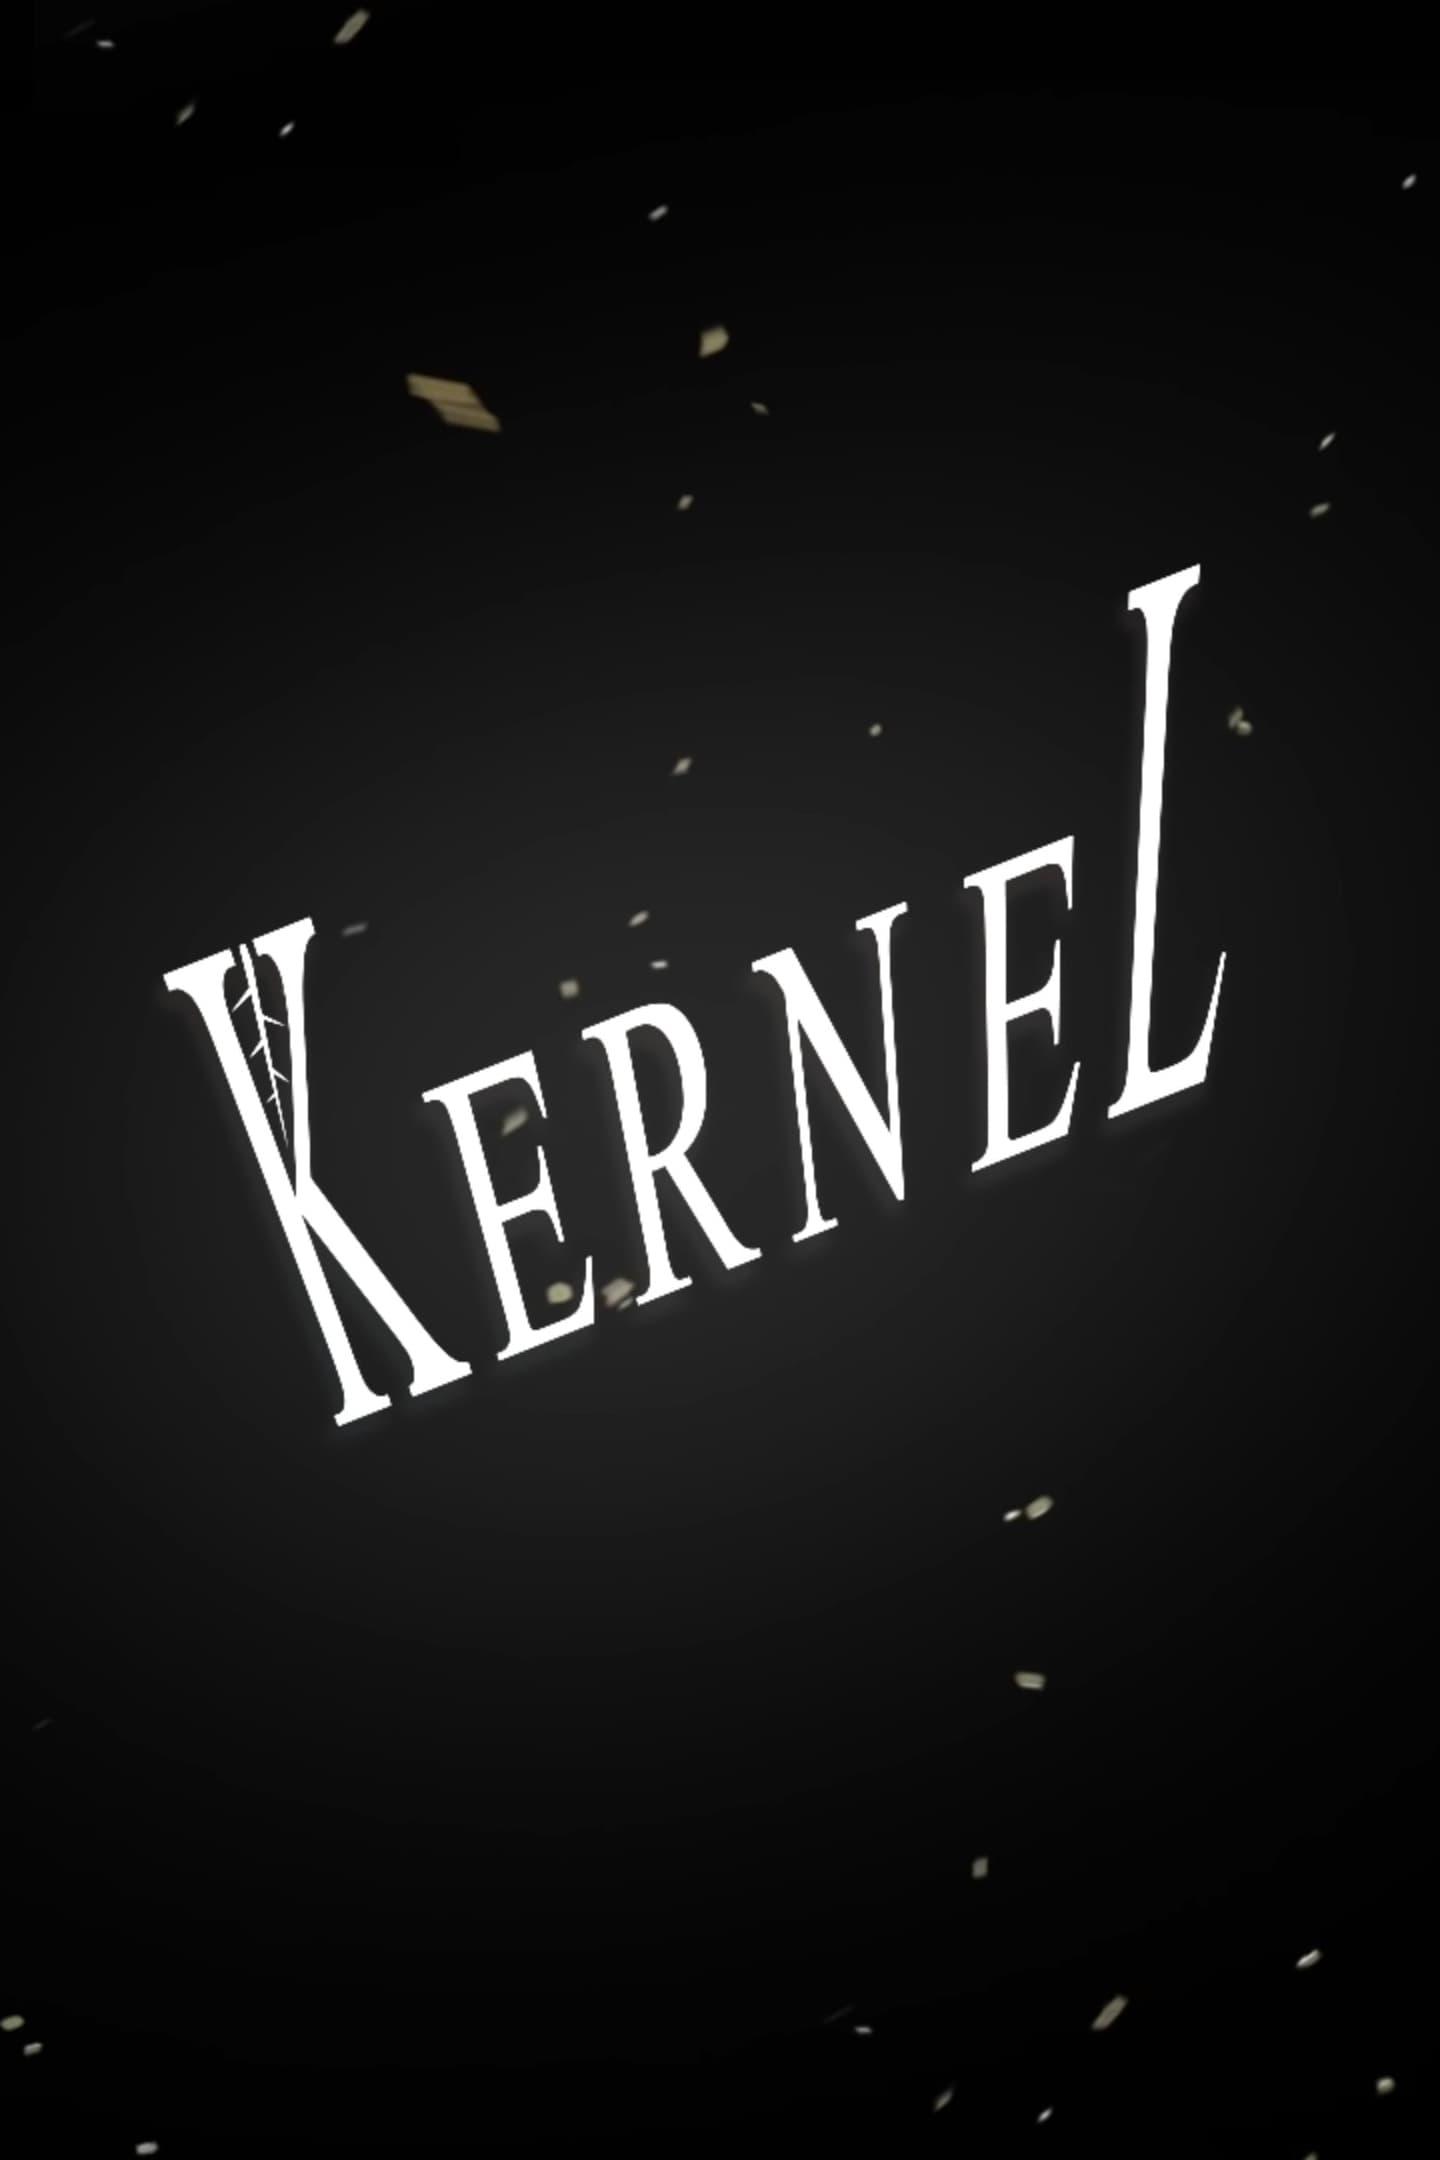 Kernel poster